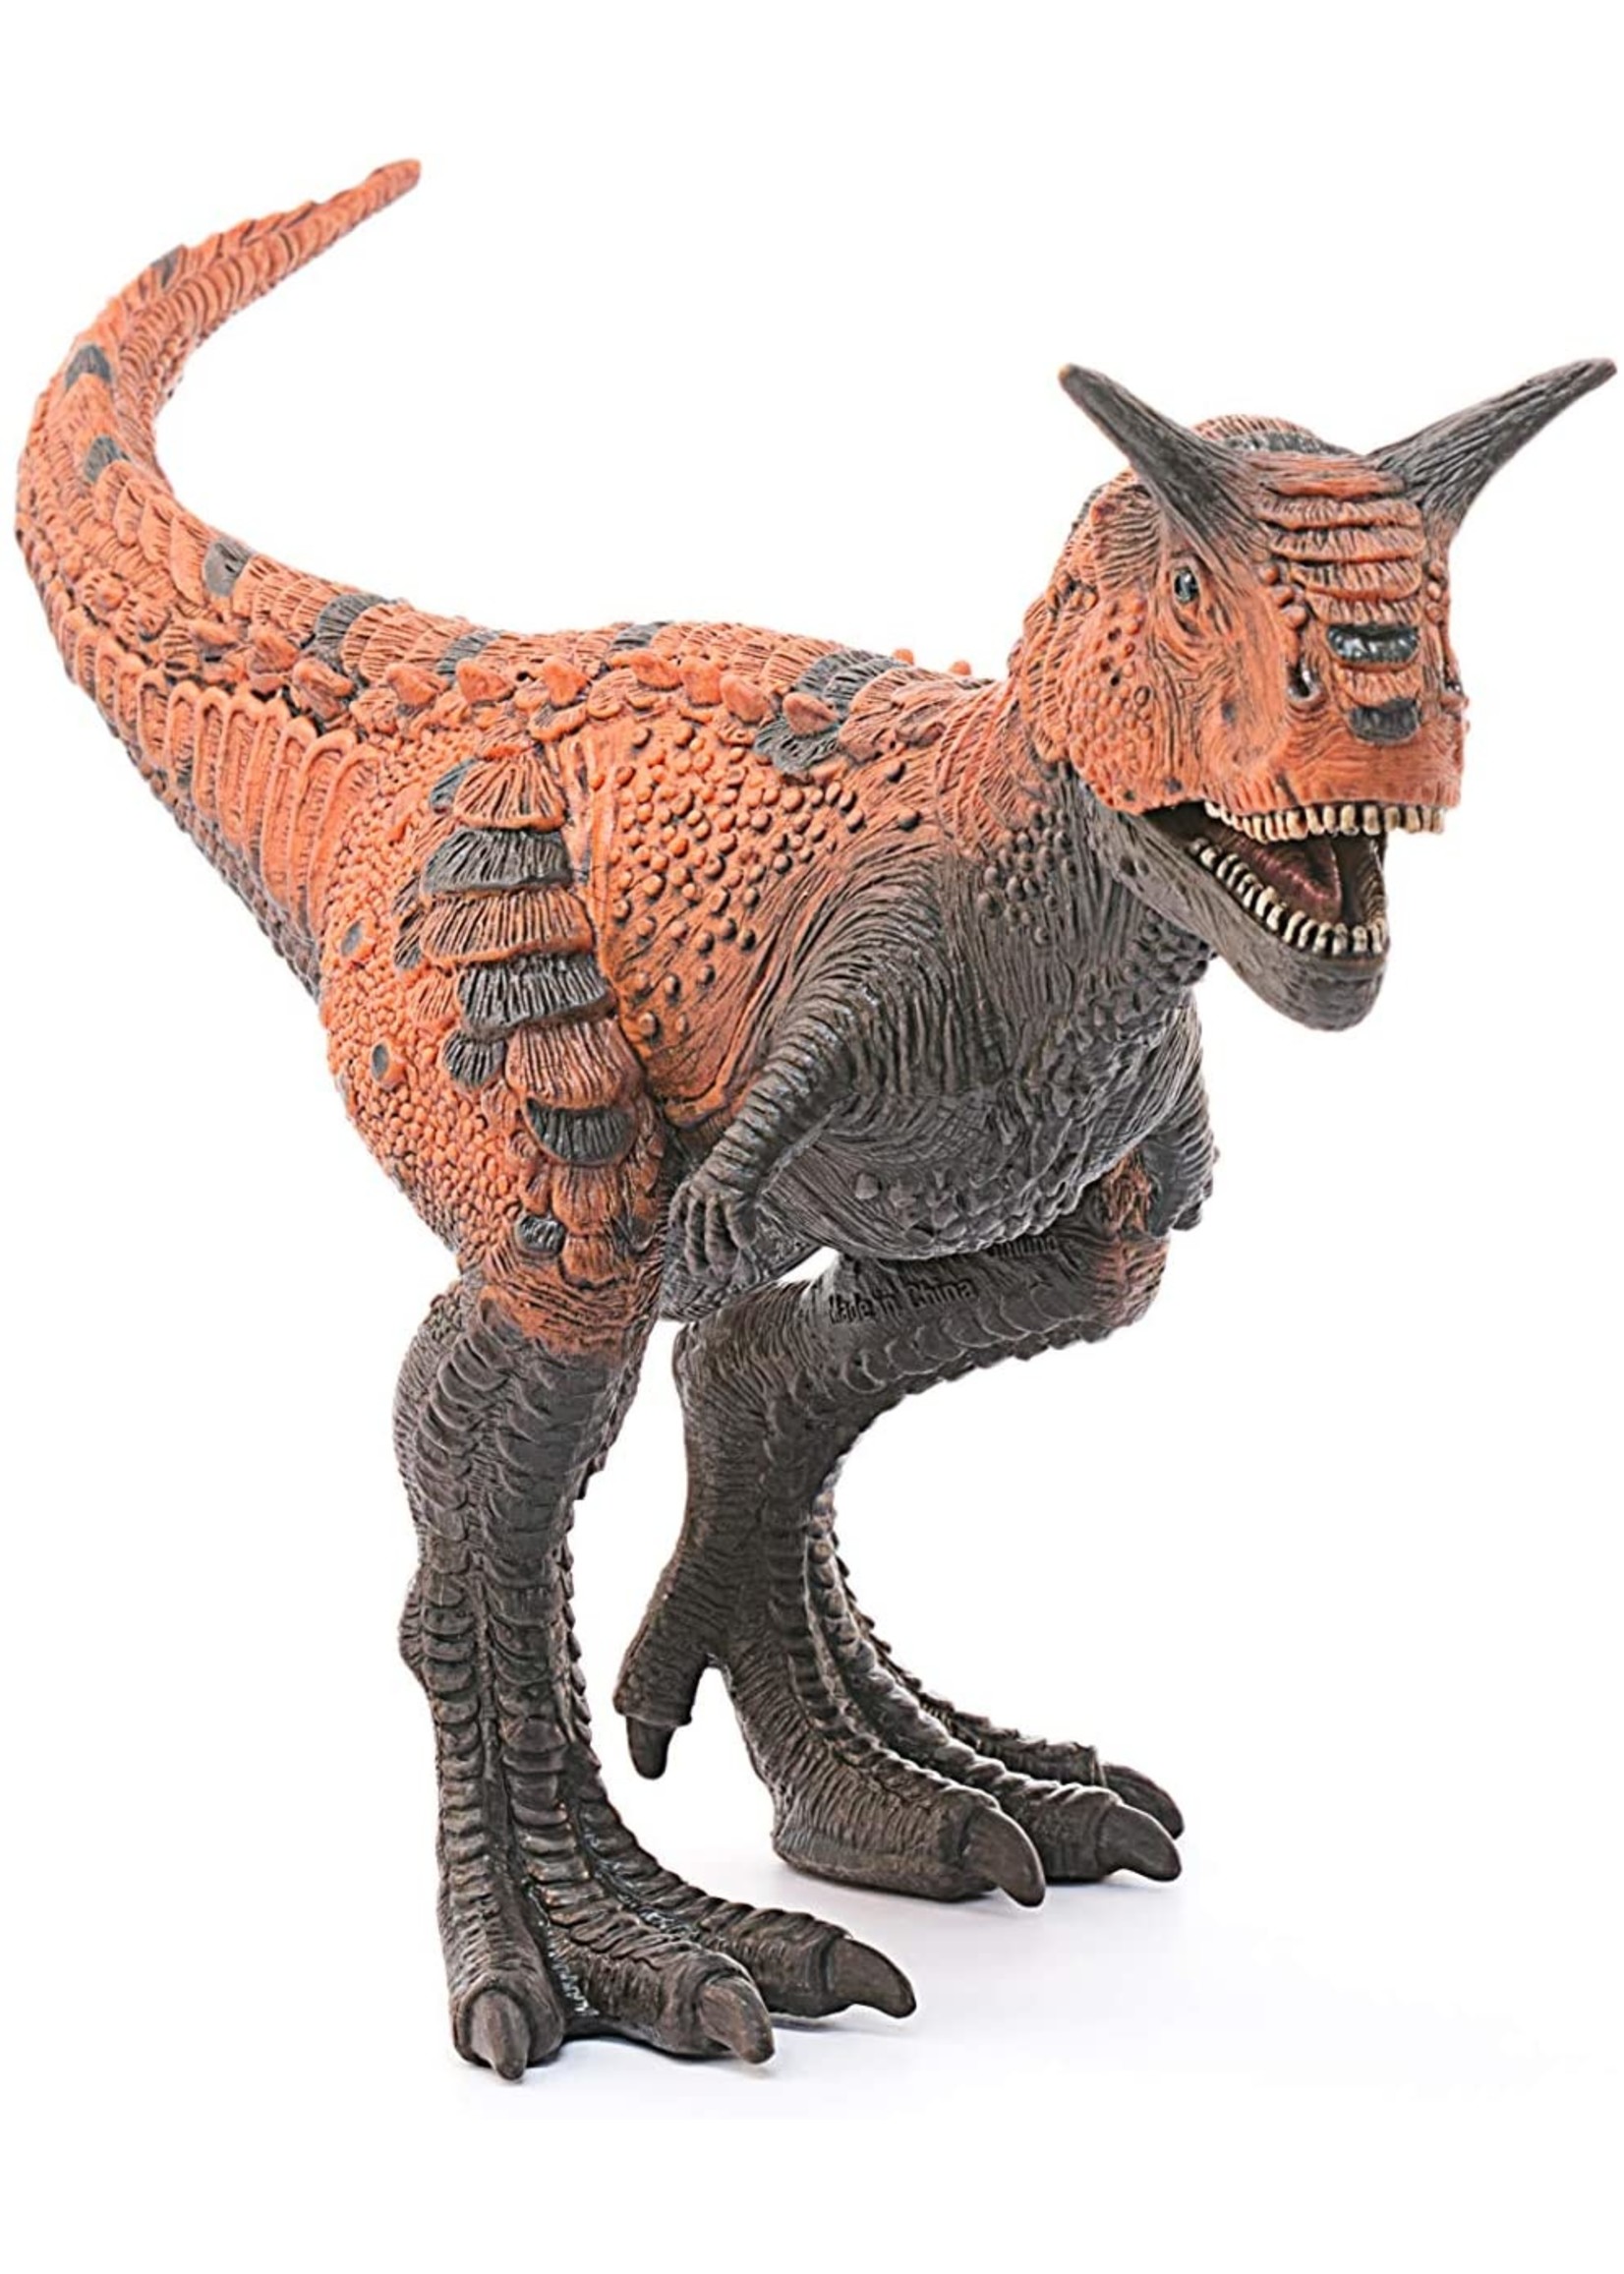 Schleich 14586 - Carnotaurus